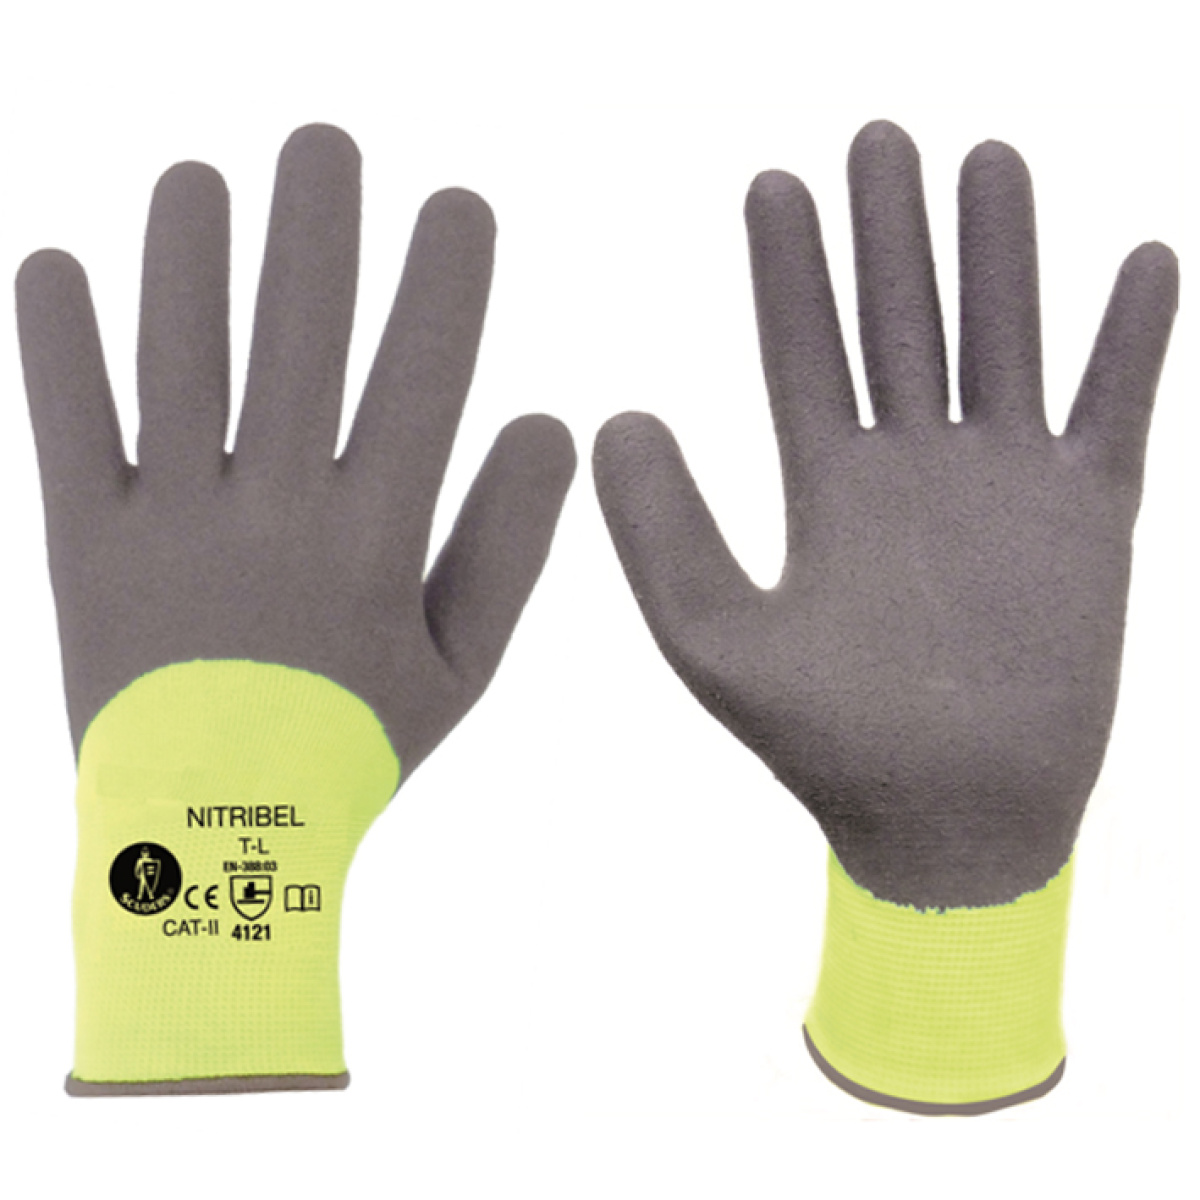  guantes nitrilo nylon t-l gama profissional 